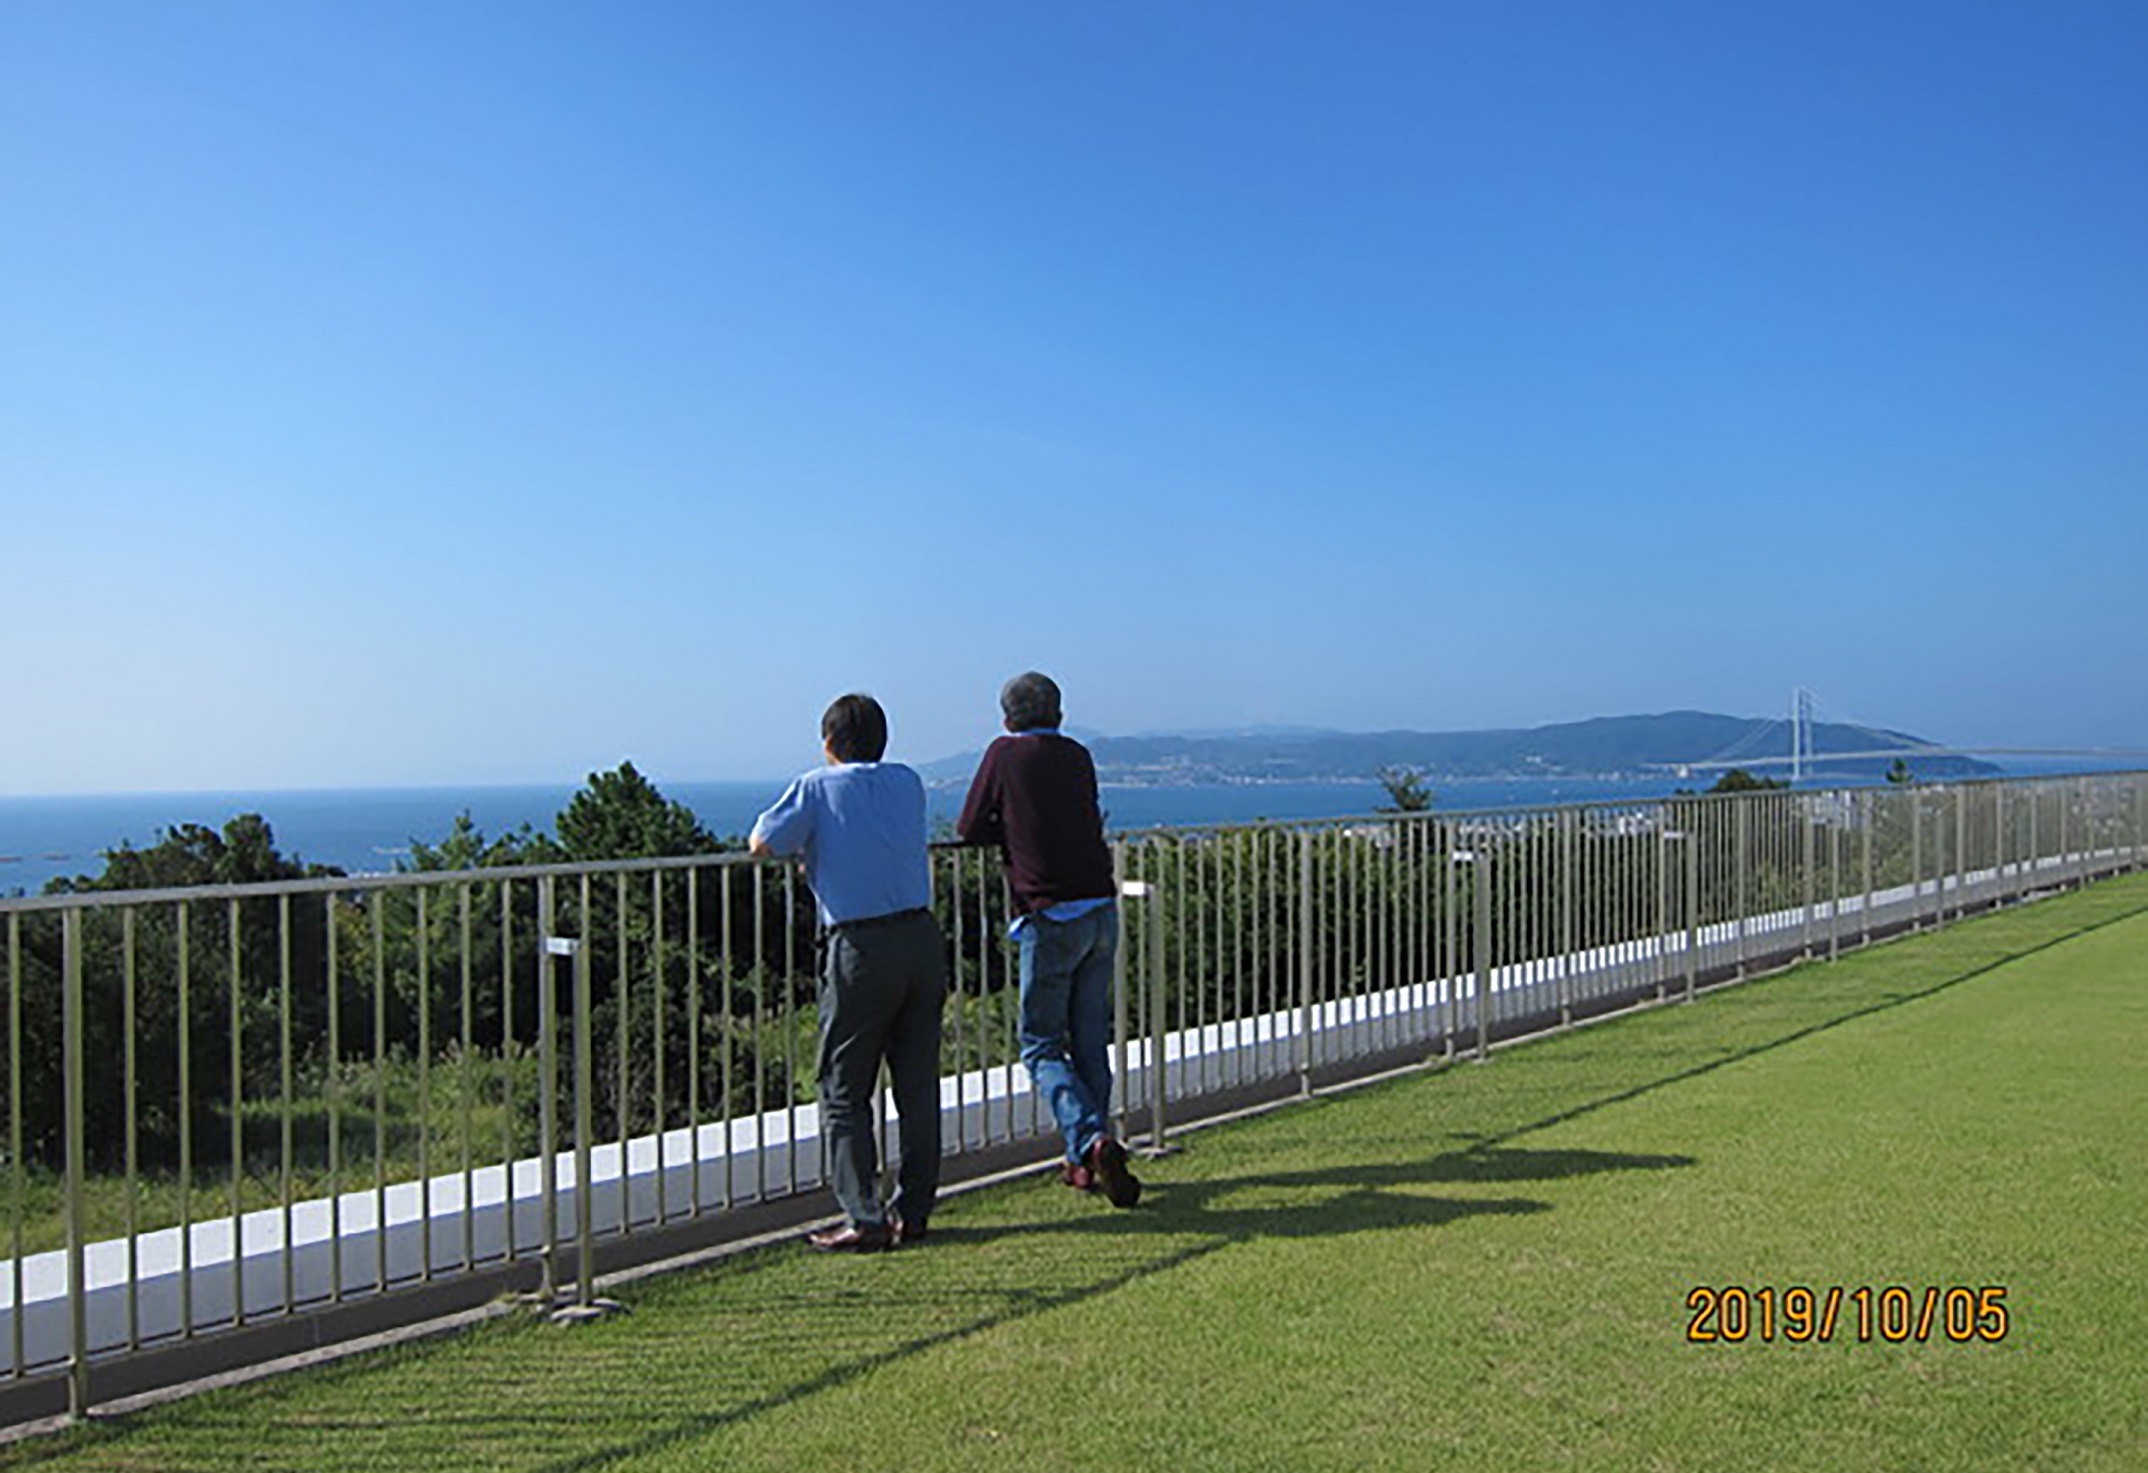 社員旅行の際に神戸から淡路島を眺めた一枚